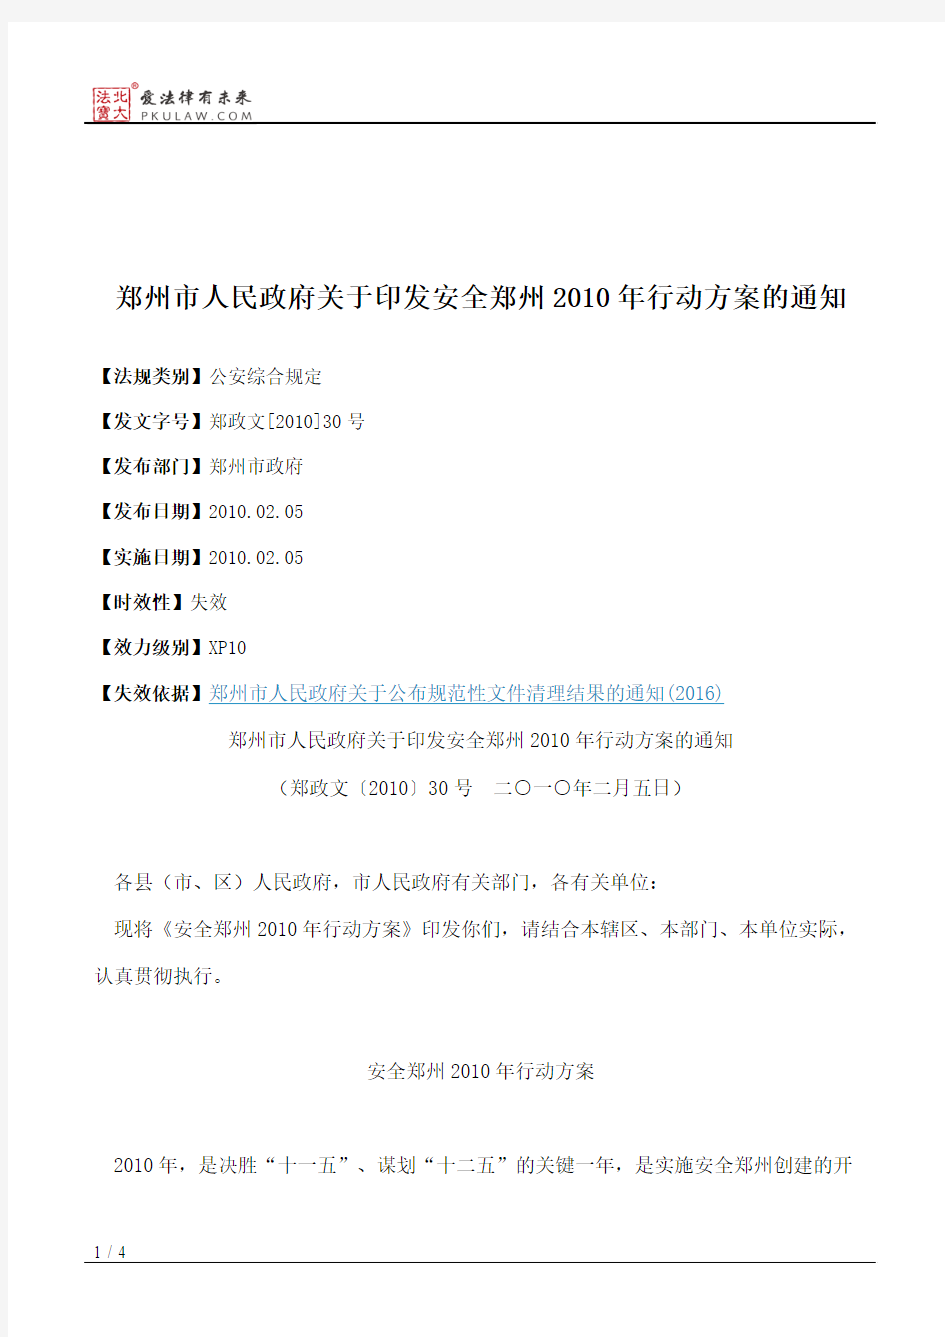 郑州市人民政府关于印发安全郑州2010年行动方案的通知